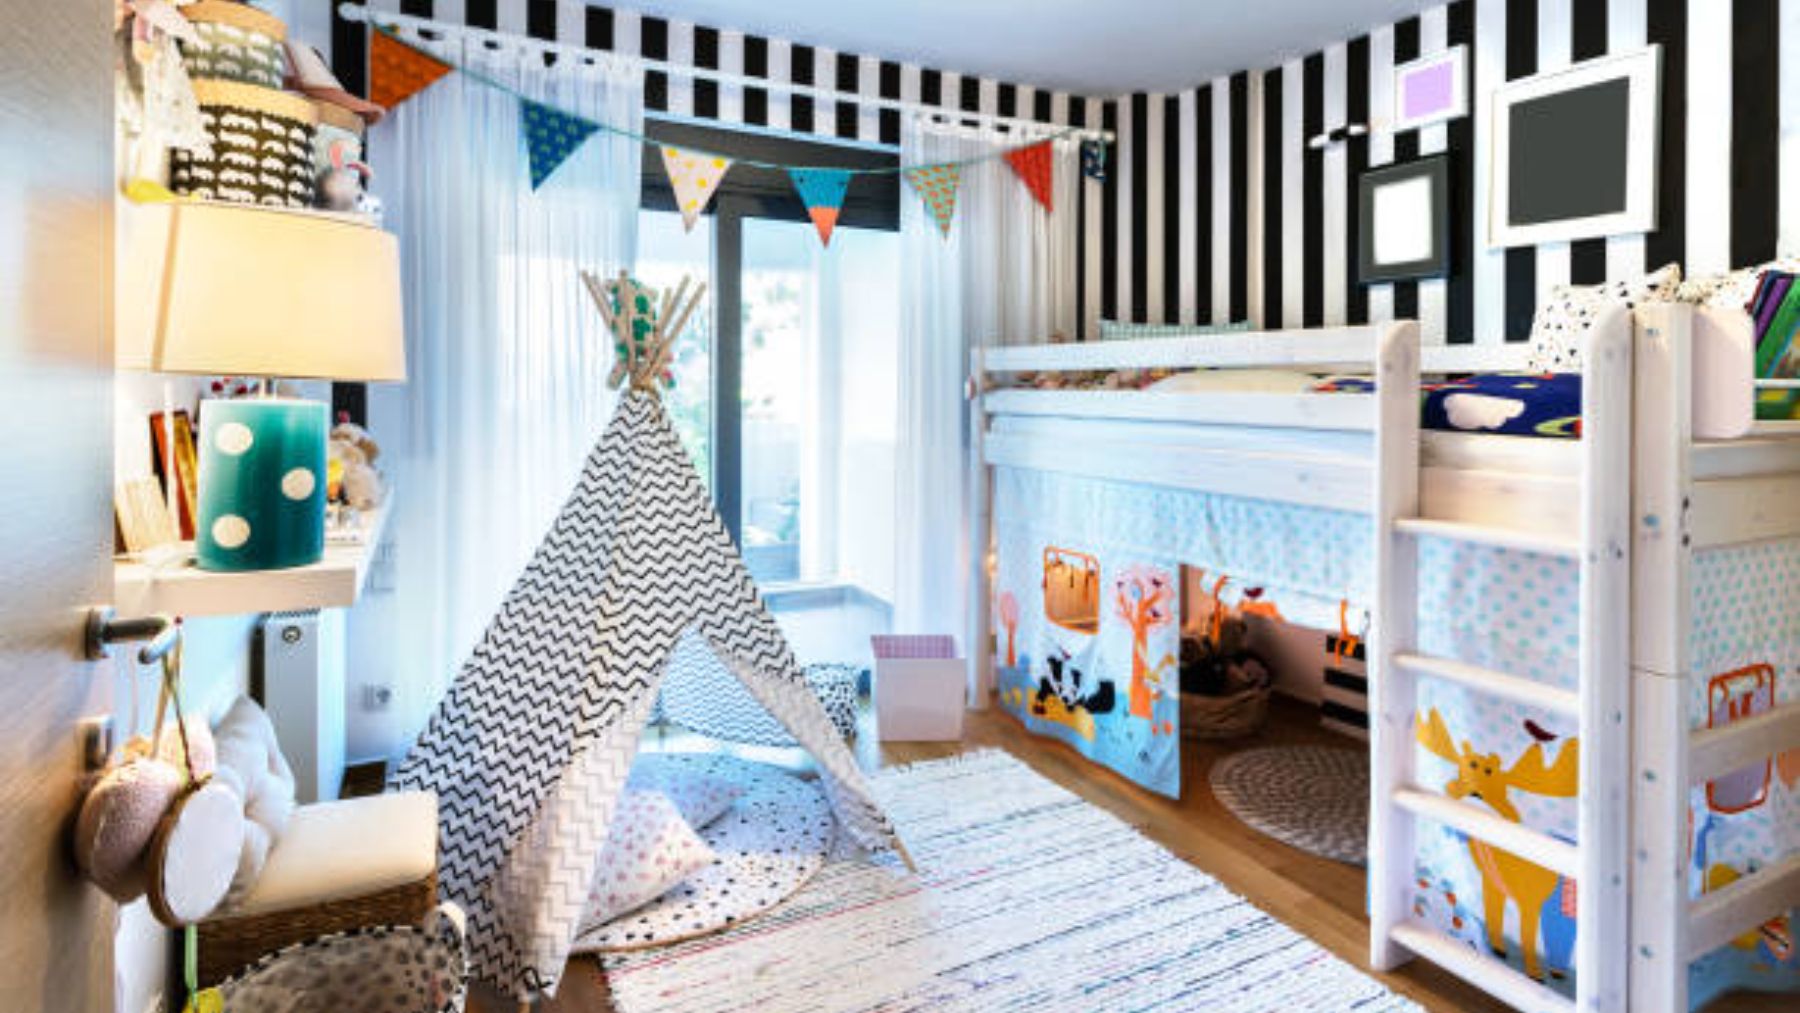 Descubre los errores que son más comunes a la hora de decorar el dormitorio infantil